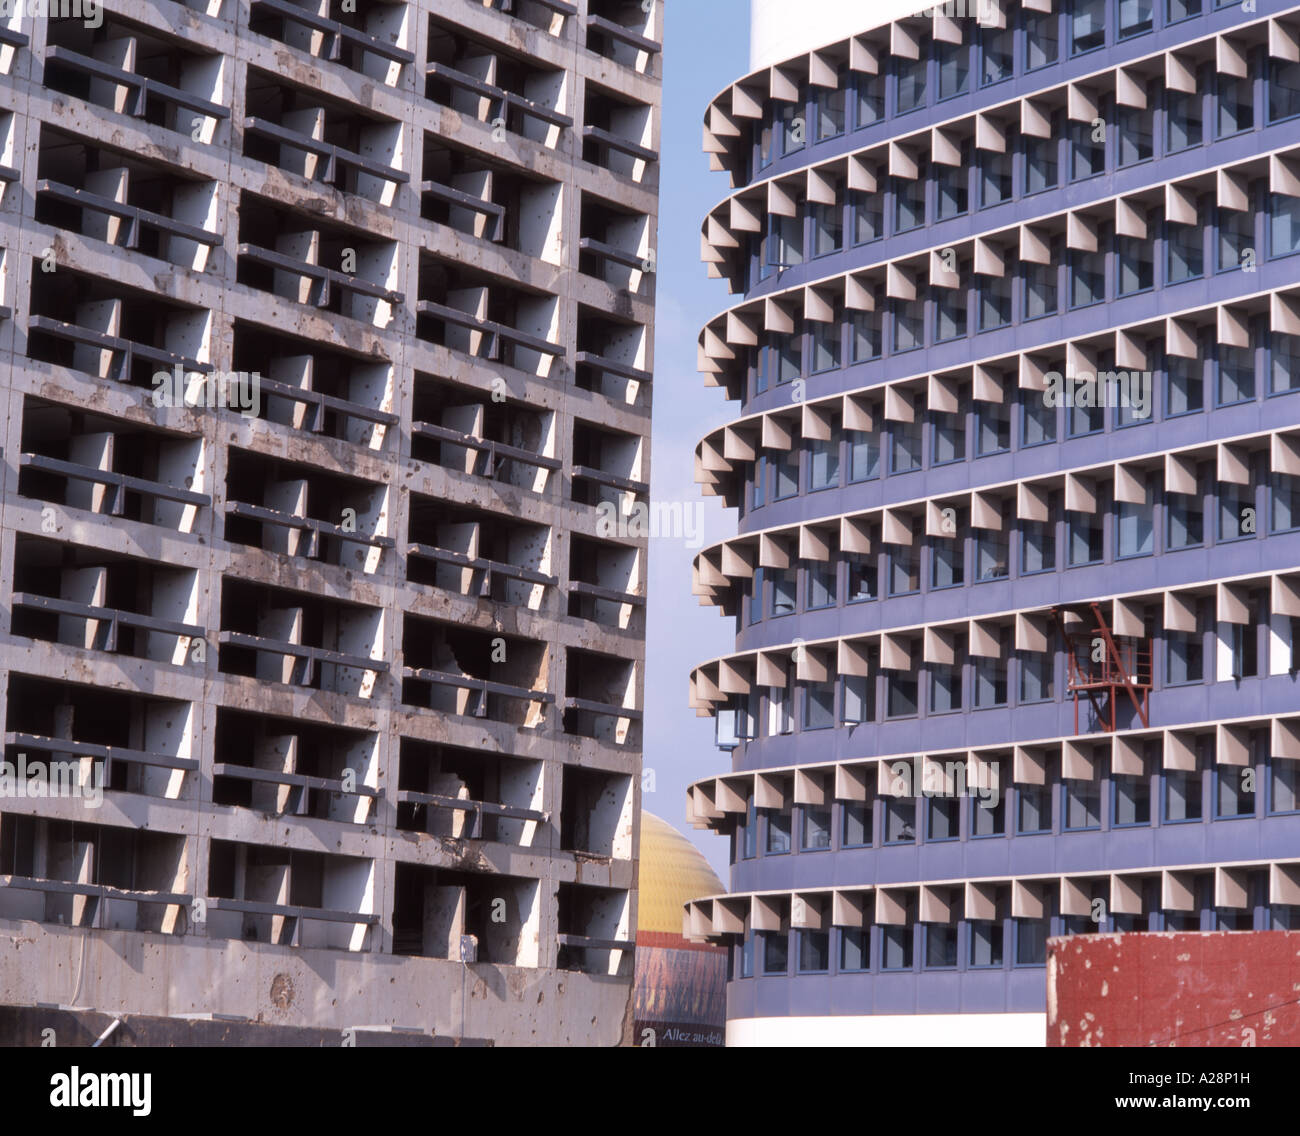 Innenstadt von Wiederaufbau, City Center, Beirut, Beyrouth Governorate, der Libanesischen Republik Stockfoto